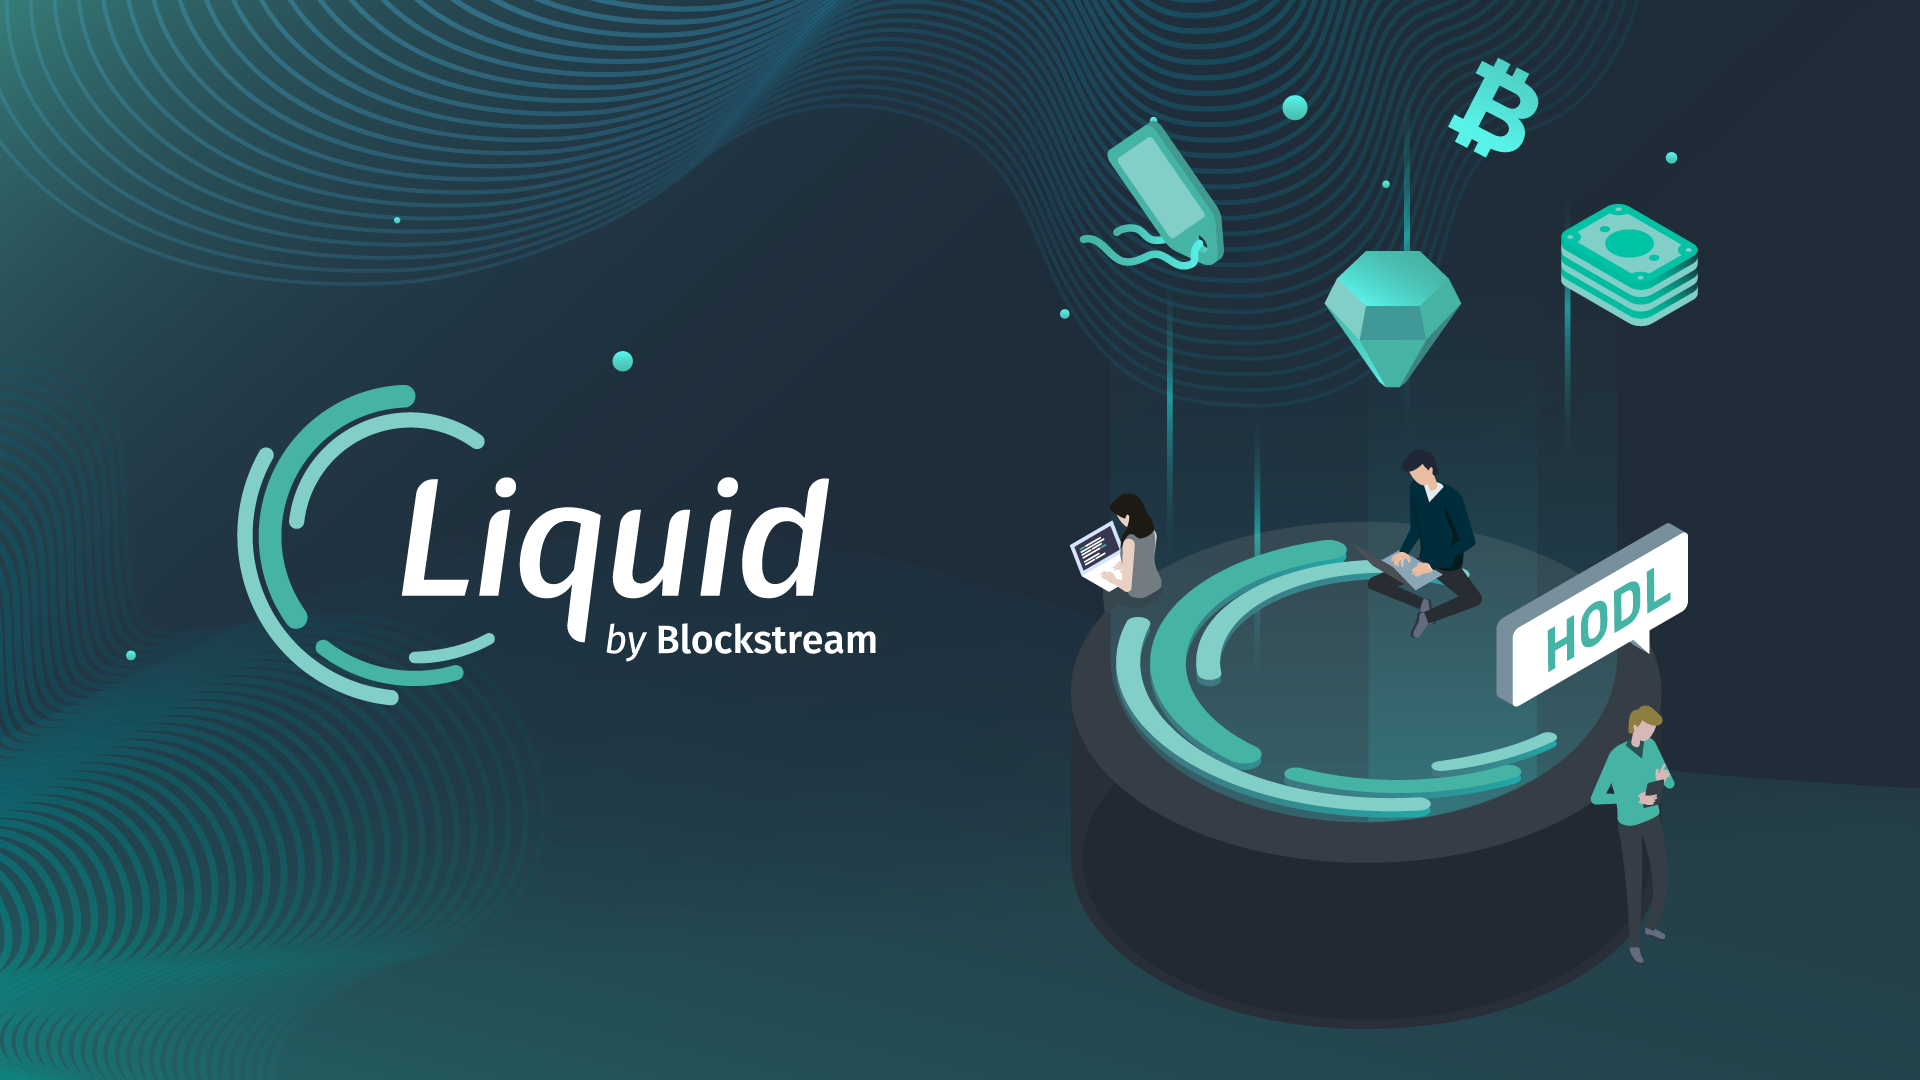 Il Liquid Network di Blockstream ha inviato 8 milioni $ in BTC in modo non sicuro, afferma uno sviluppatore Bitcoin - banner image